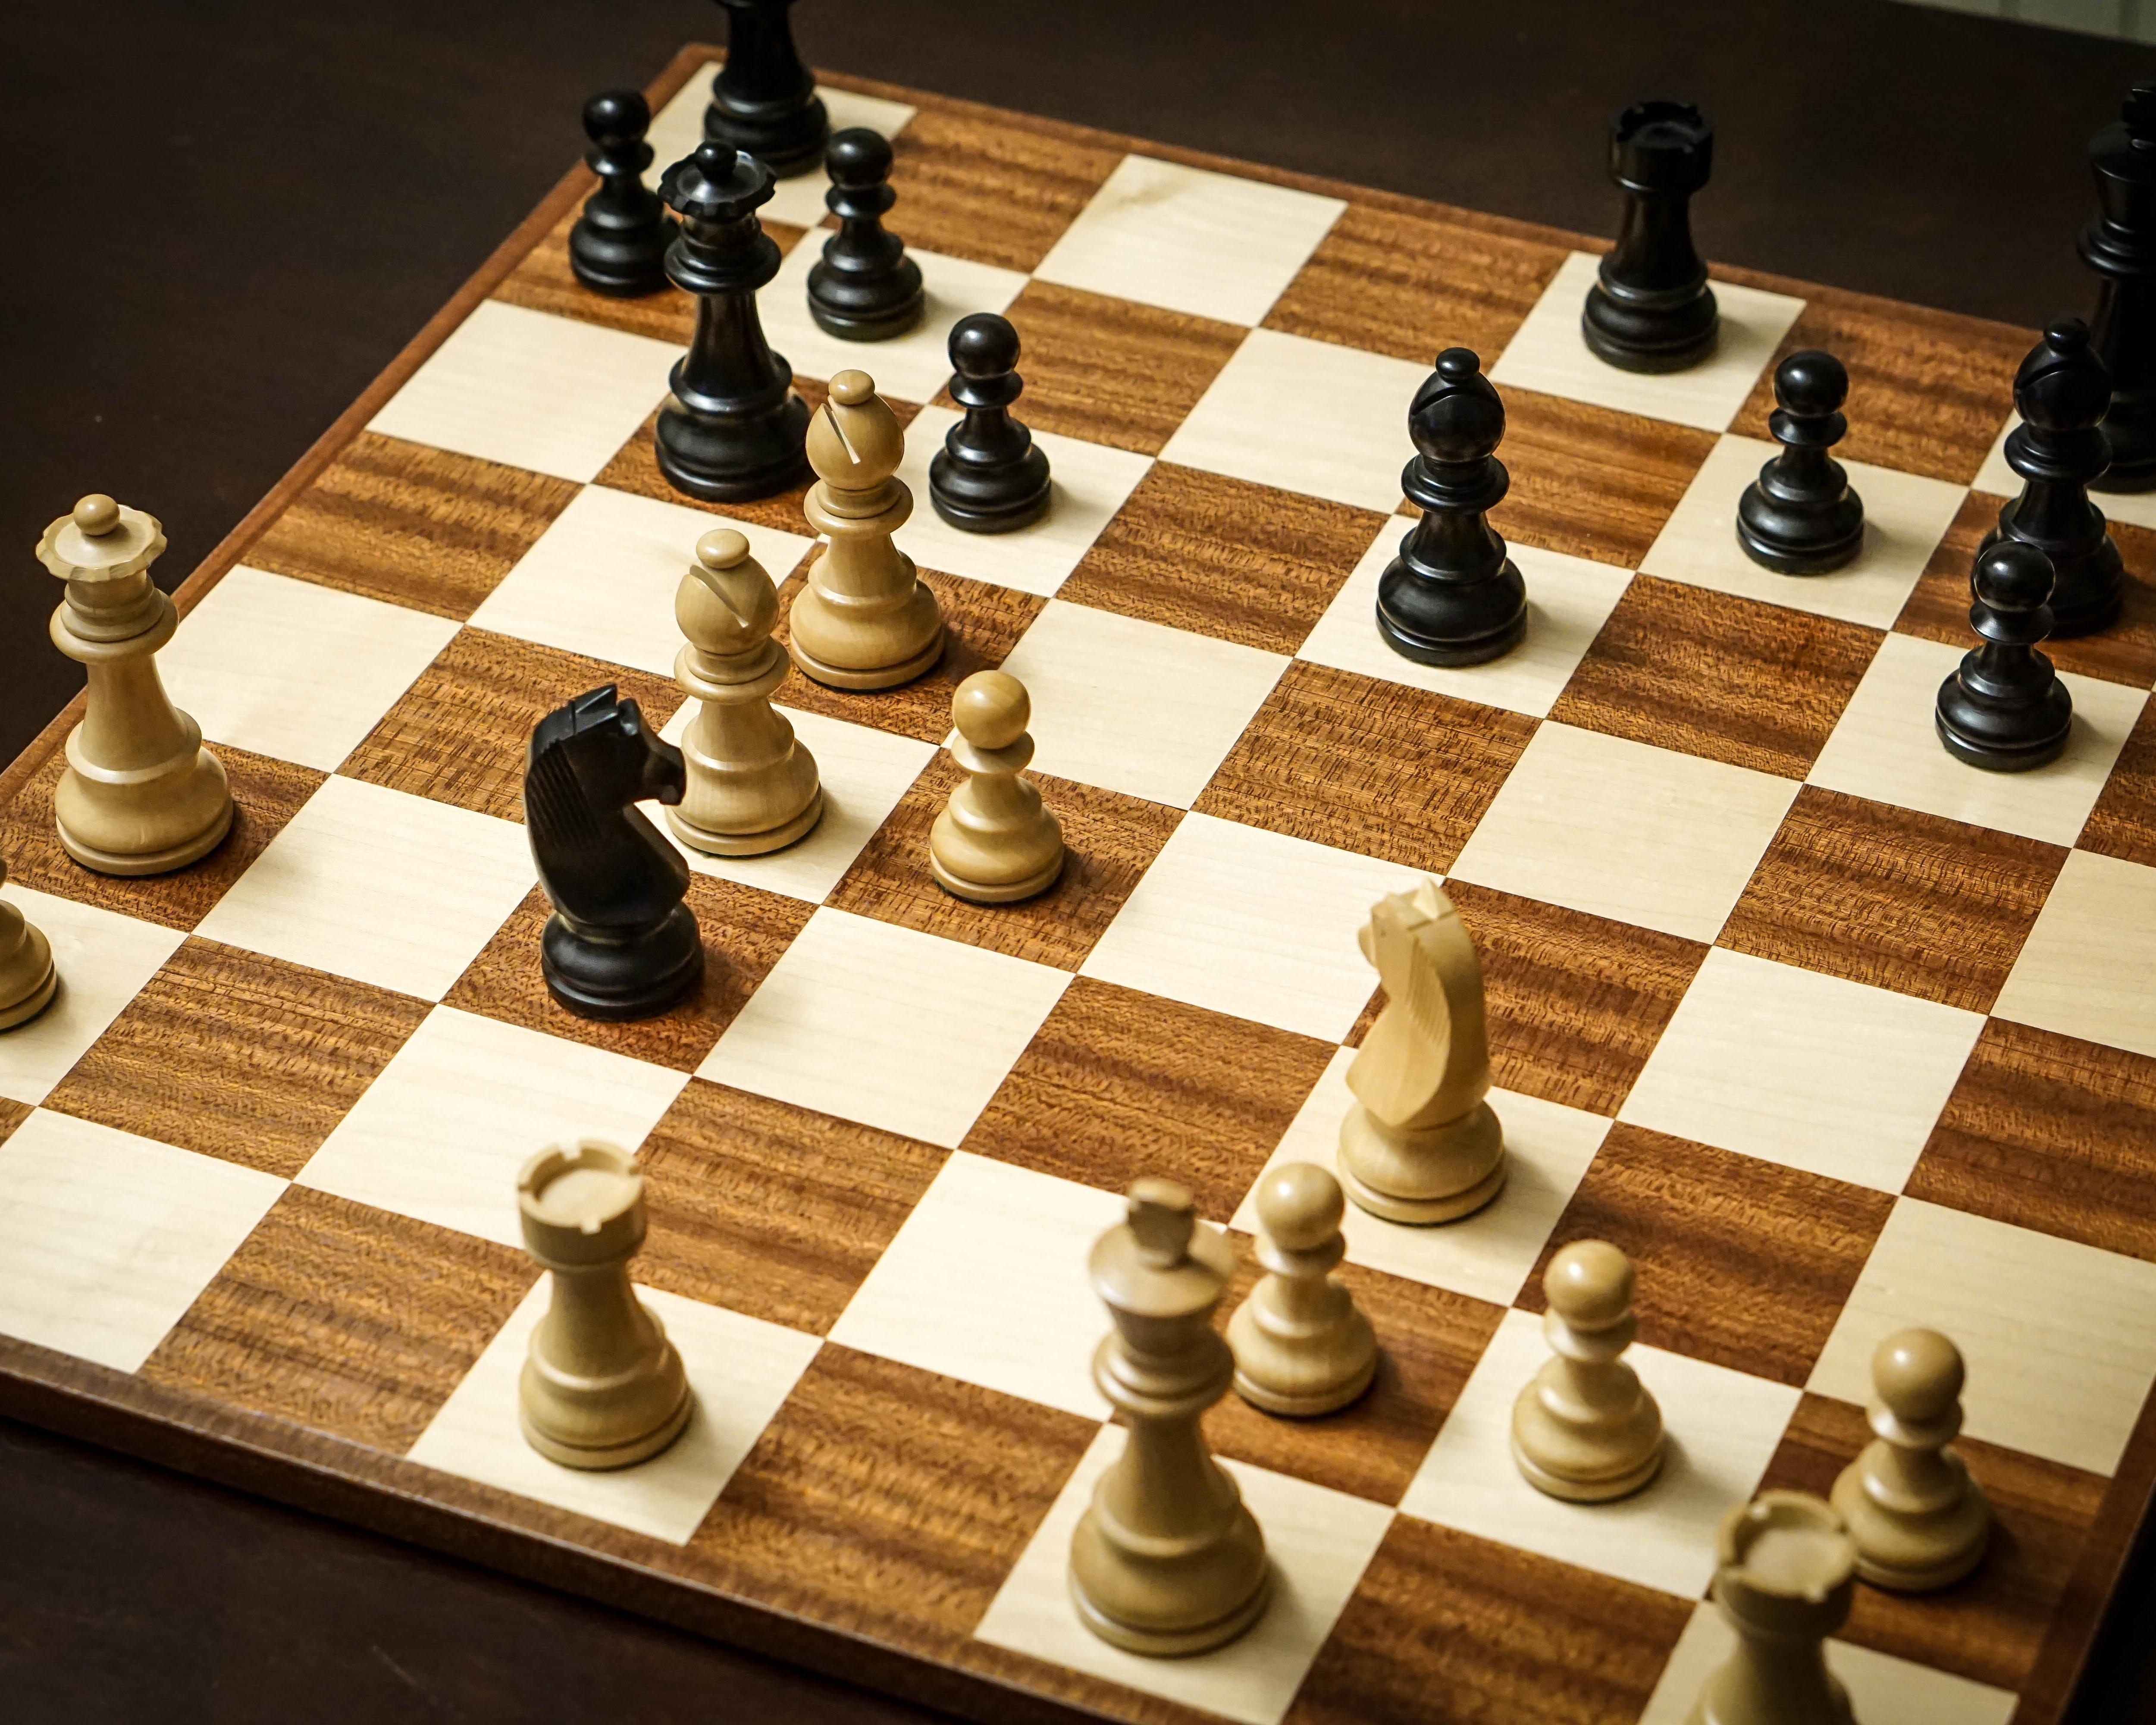 Bobby Fischer's Chess Games